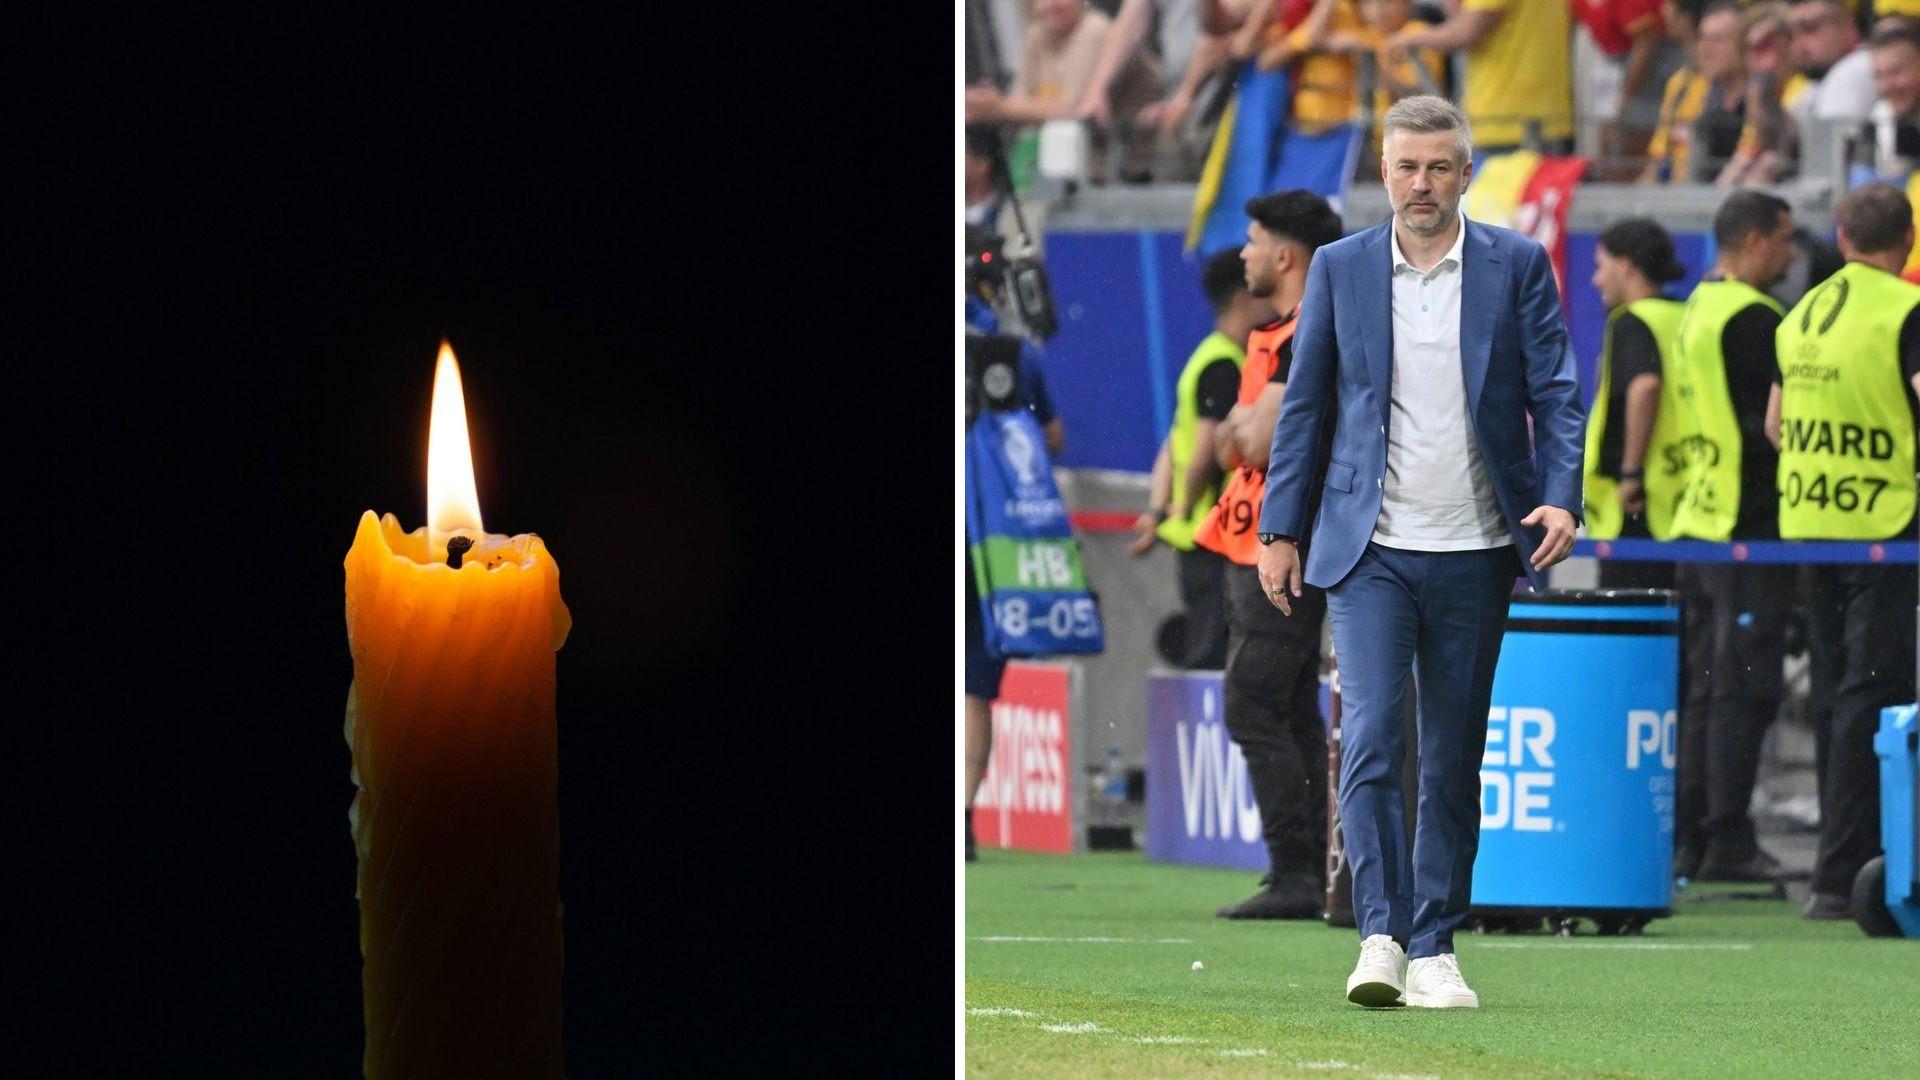 Doliu în familia lui Edi Iordănescu. Vestea tristă a venit după meciul România - Slovacia